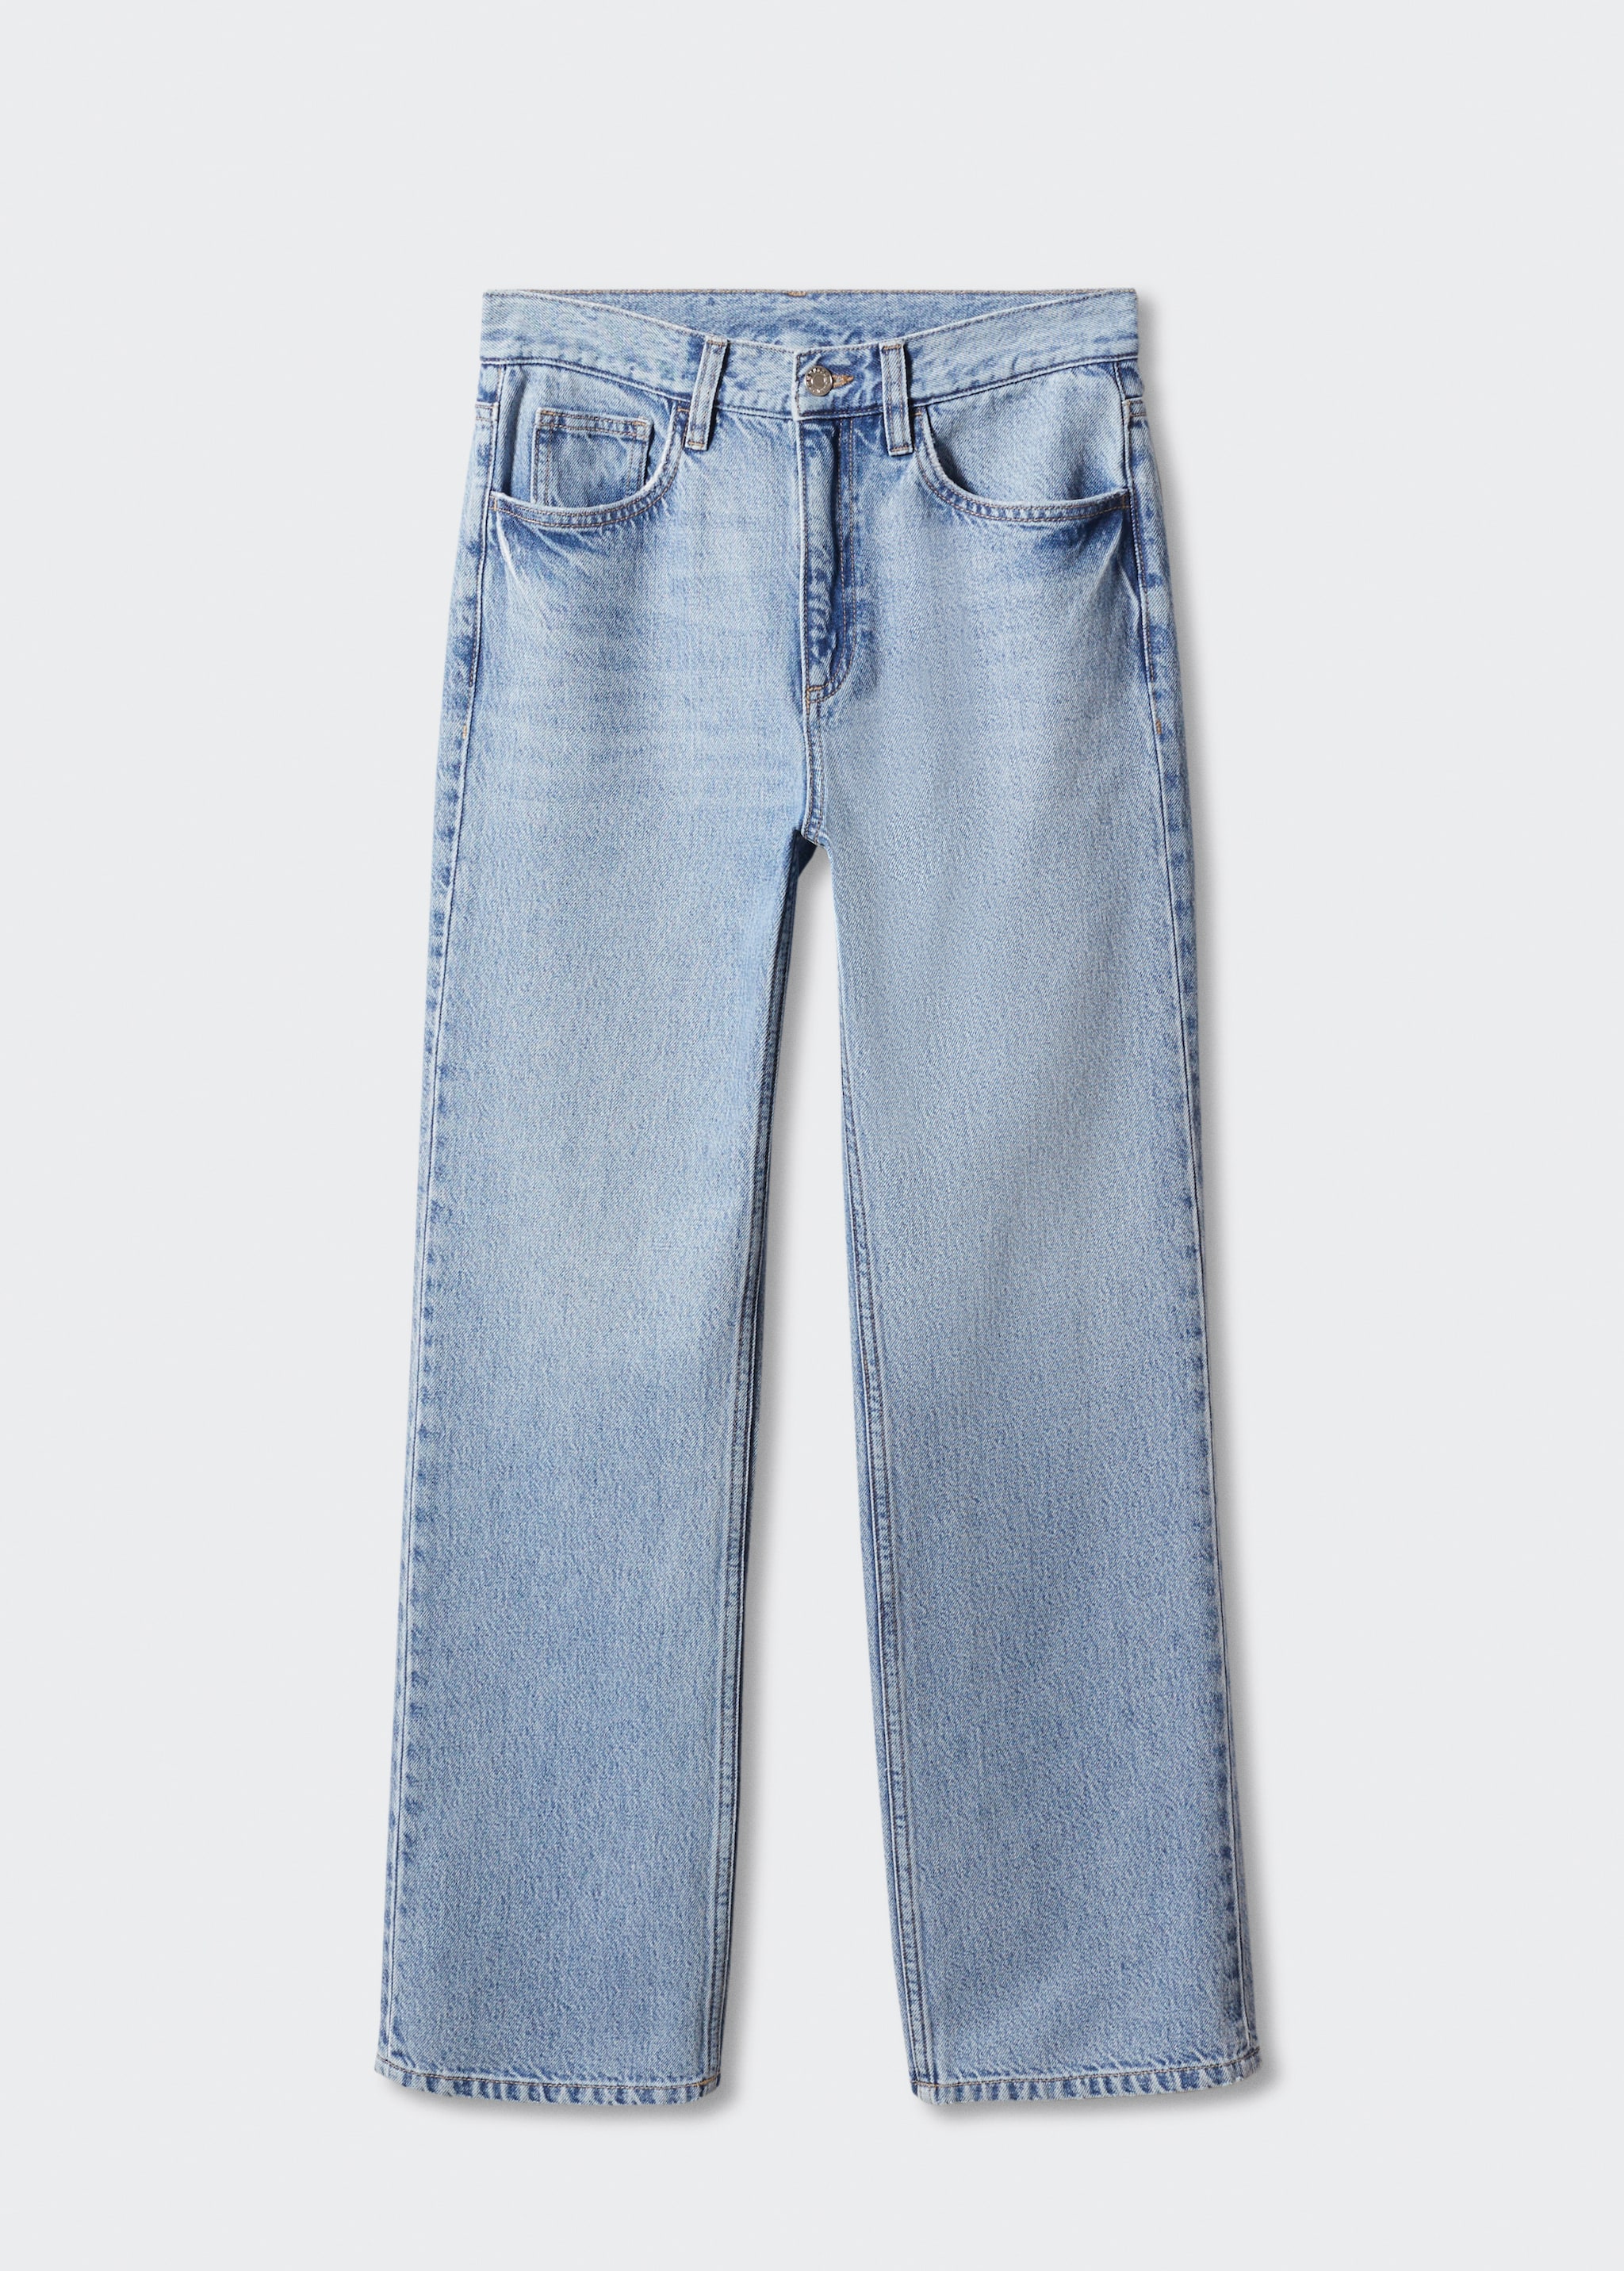 Прямые джинсы с посадкой на талии - Изделие без модели